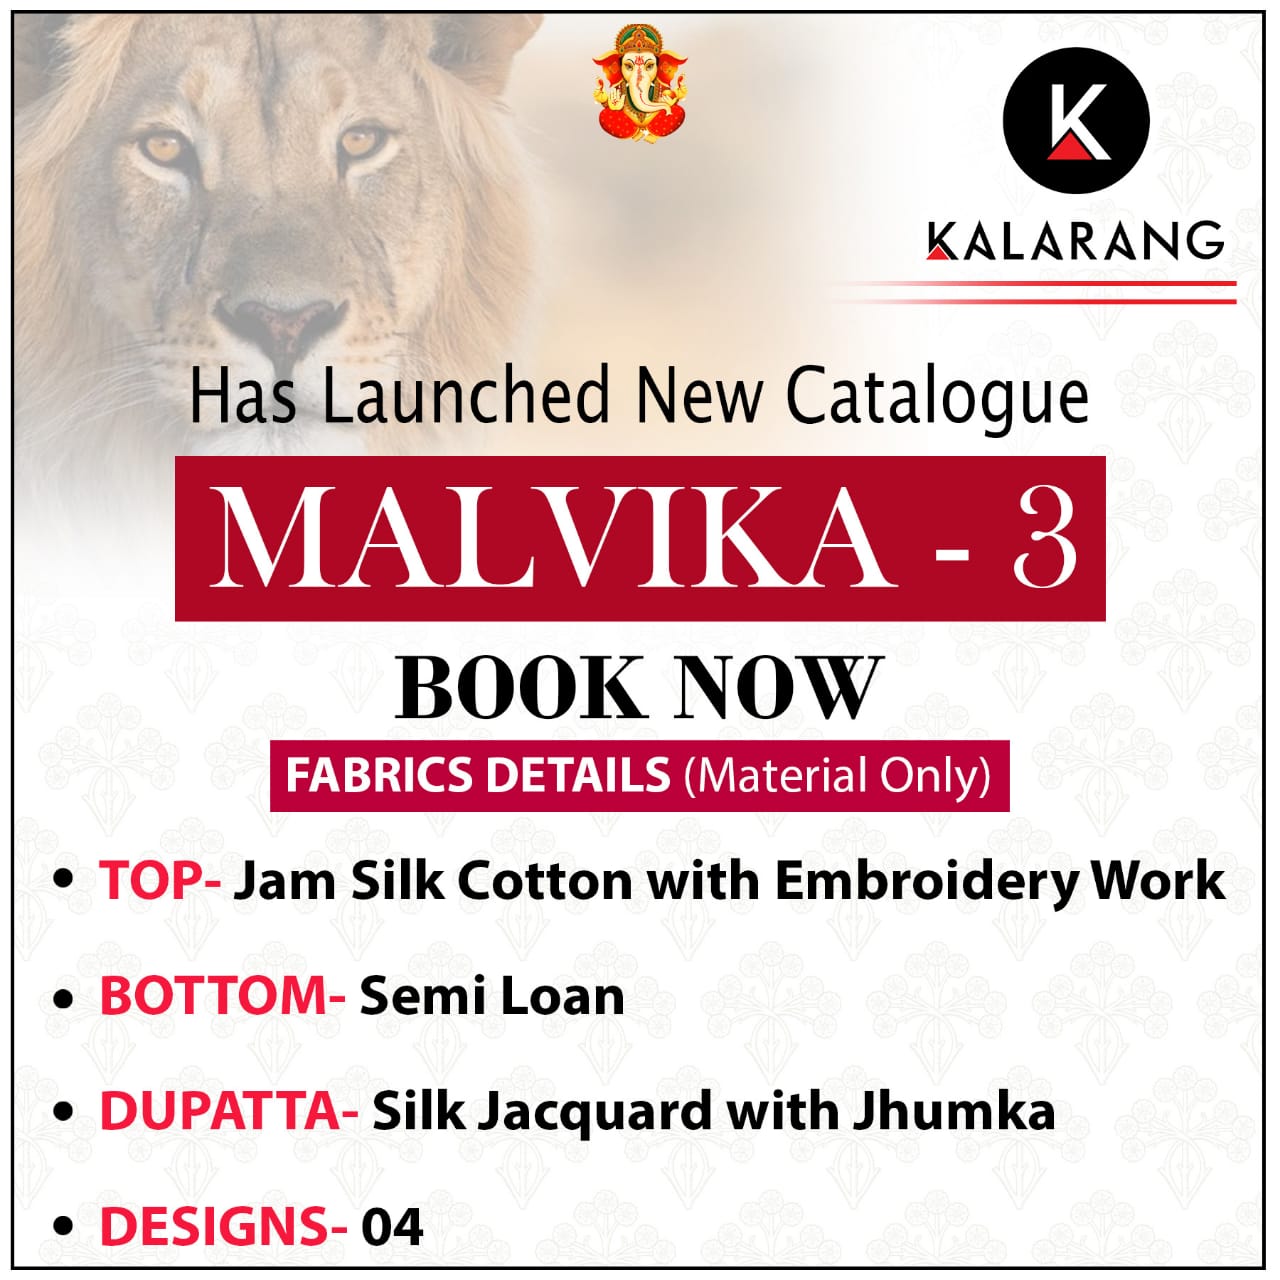 Kalarang Presents Malvika Vol-3 Jam Silk Cotton With Embroidery Work Salwar Suit Wholesaler